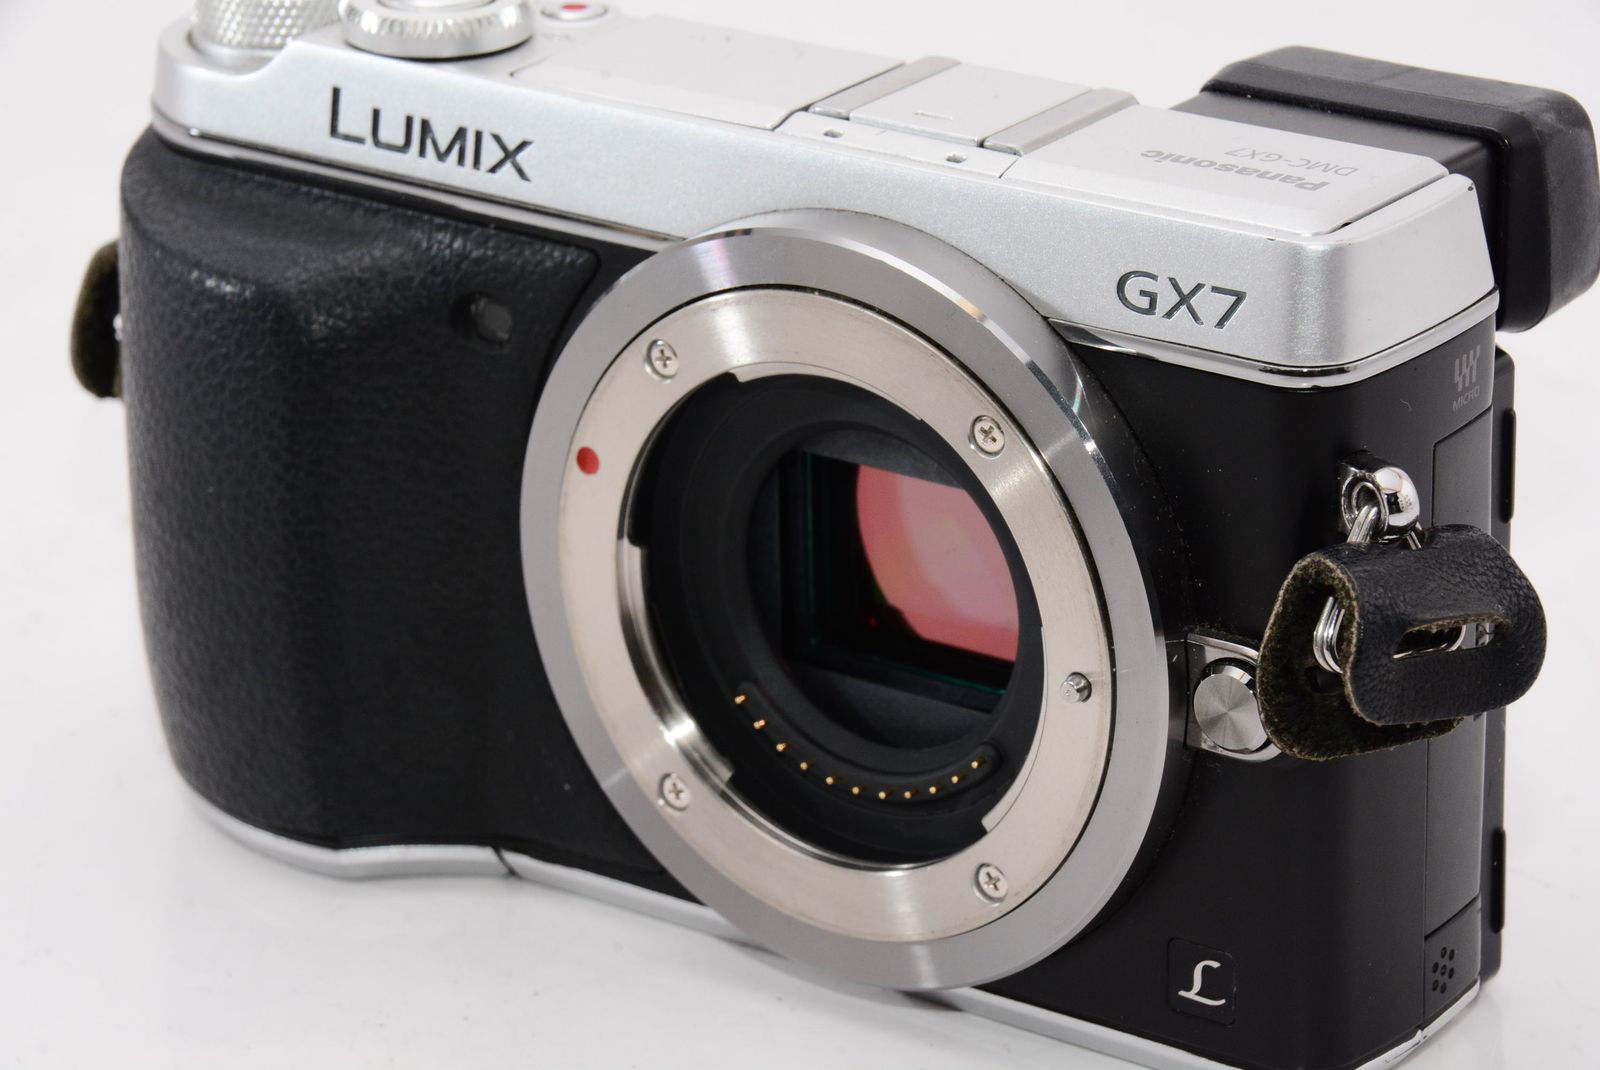 アウトレット 美品 パナソニック ミラーレス一眼カメラ ルミックス GX7